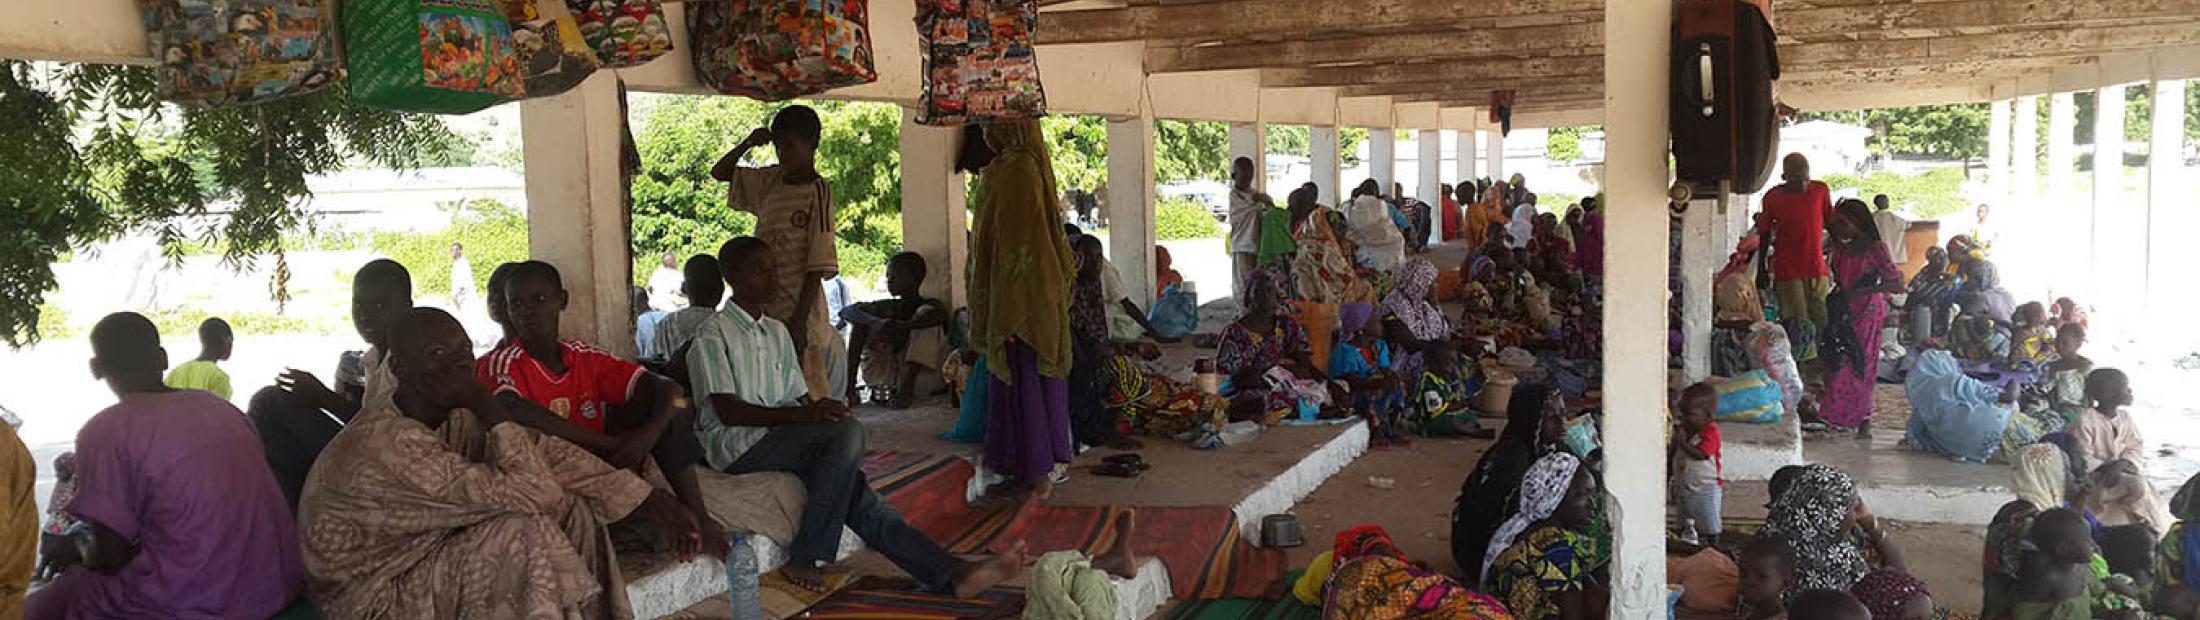 Los refugiados nigerianos en Camerún, Chad y Níger necesitan ayuda